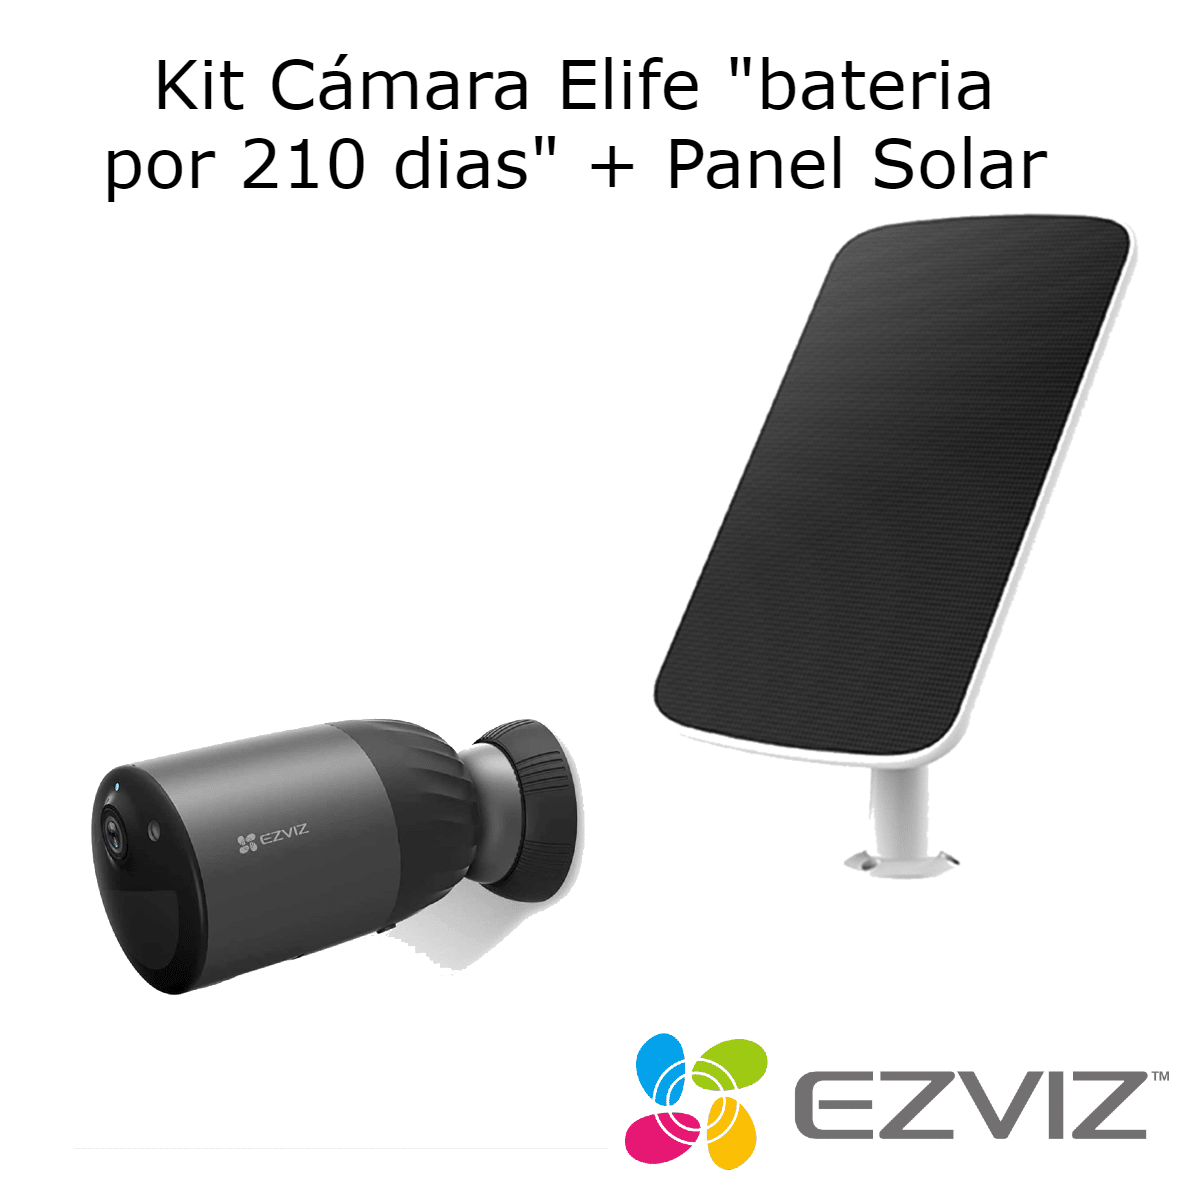 Kit Camara Full inalambrica Elife Bc1c WiFi 32GB interno + Solar / Bateria x dias / Ezviz - CCTVIP CHILE Soluciones en Tecnología y seguridad